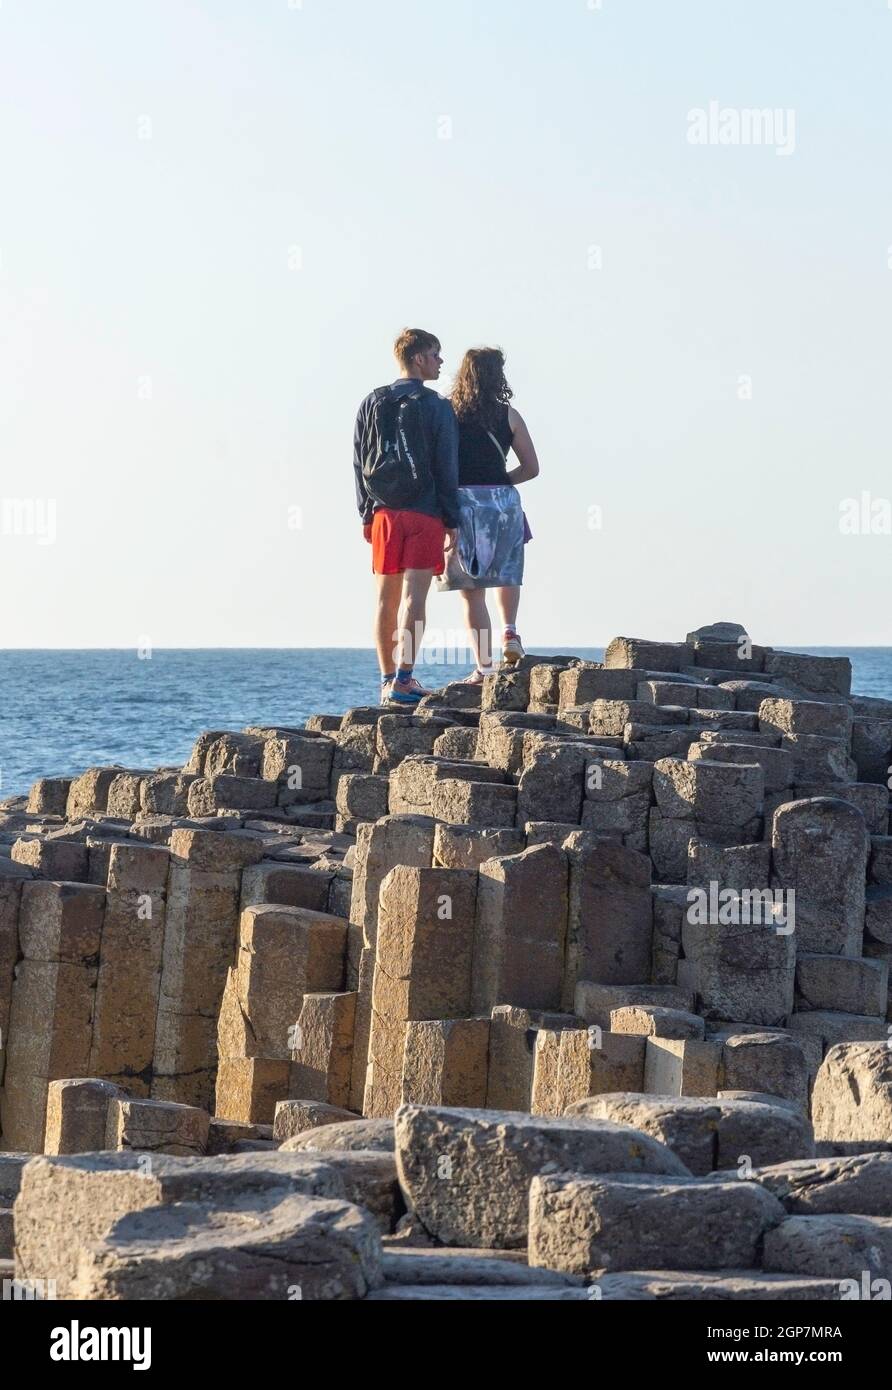 Jeune couple debout sur des colonnes de basalte, la chaussée des géants, Causeway Coast, près de Bushmills, comté d'Antrim, Irlande du Nord, Royaume-Uni Banque D'Images